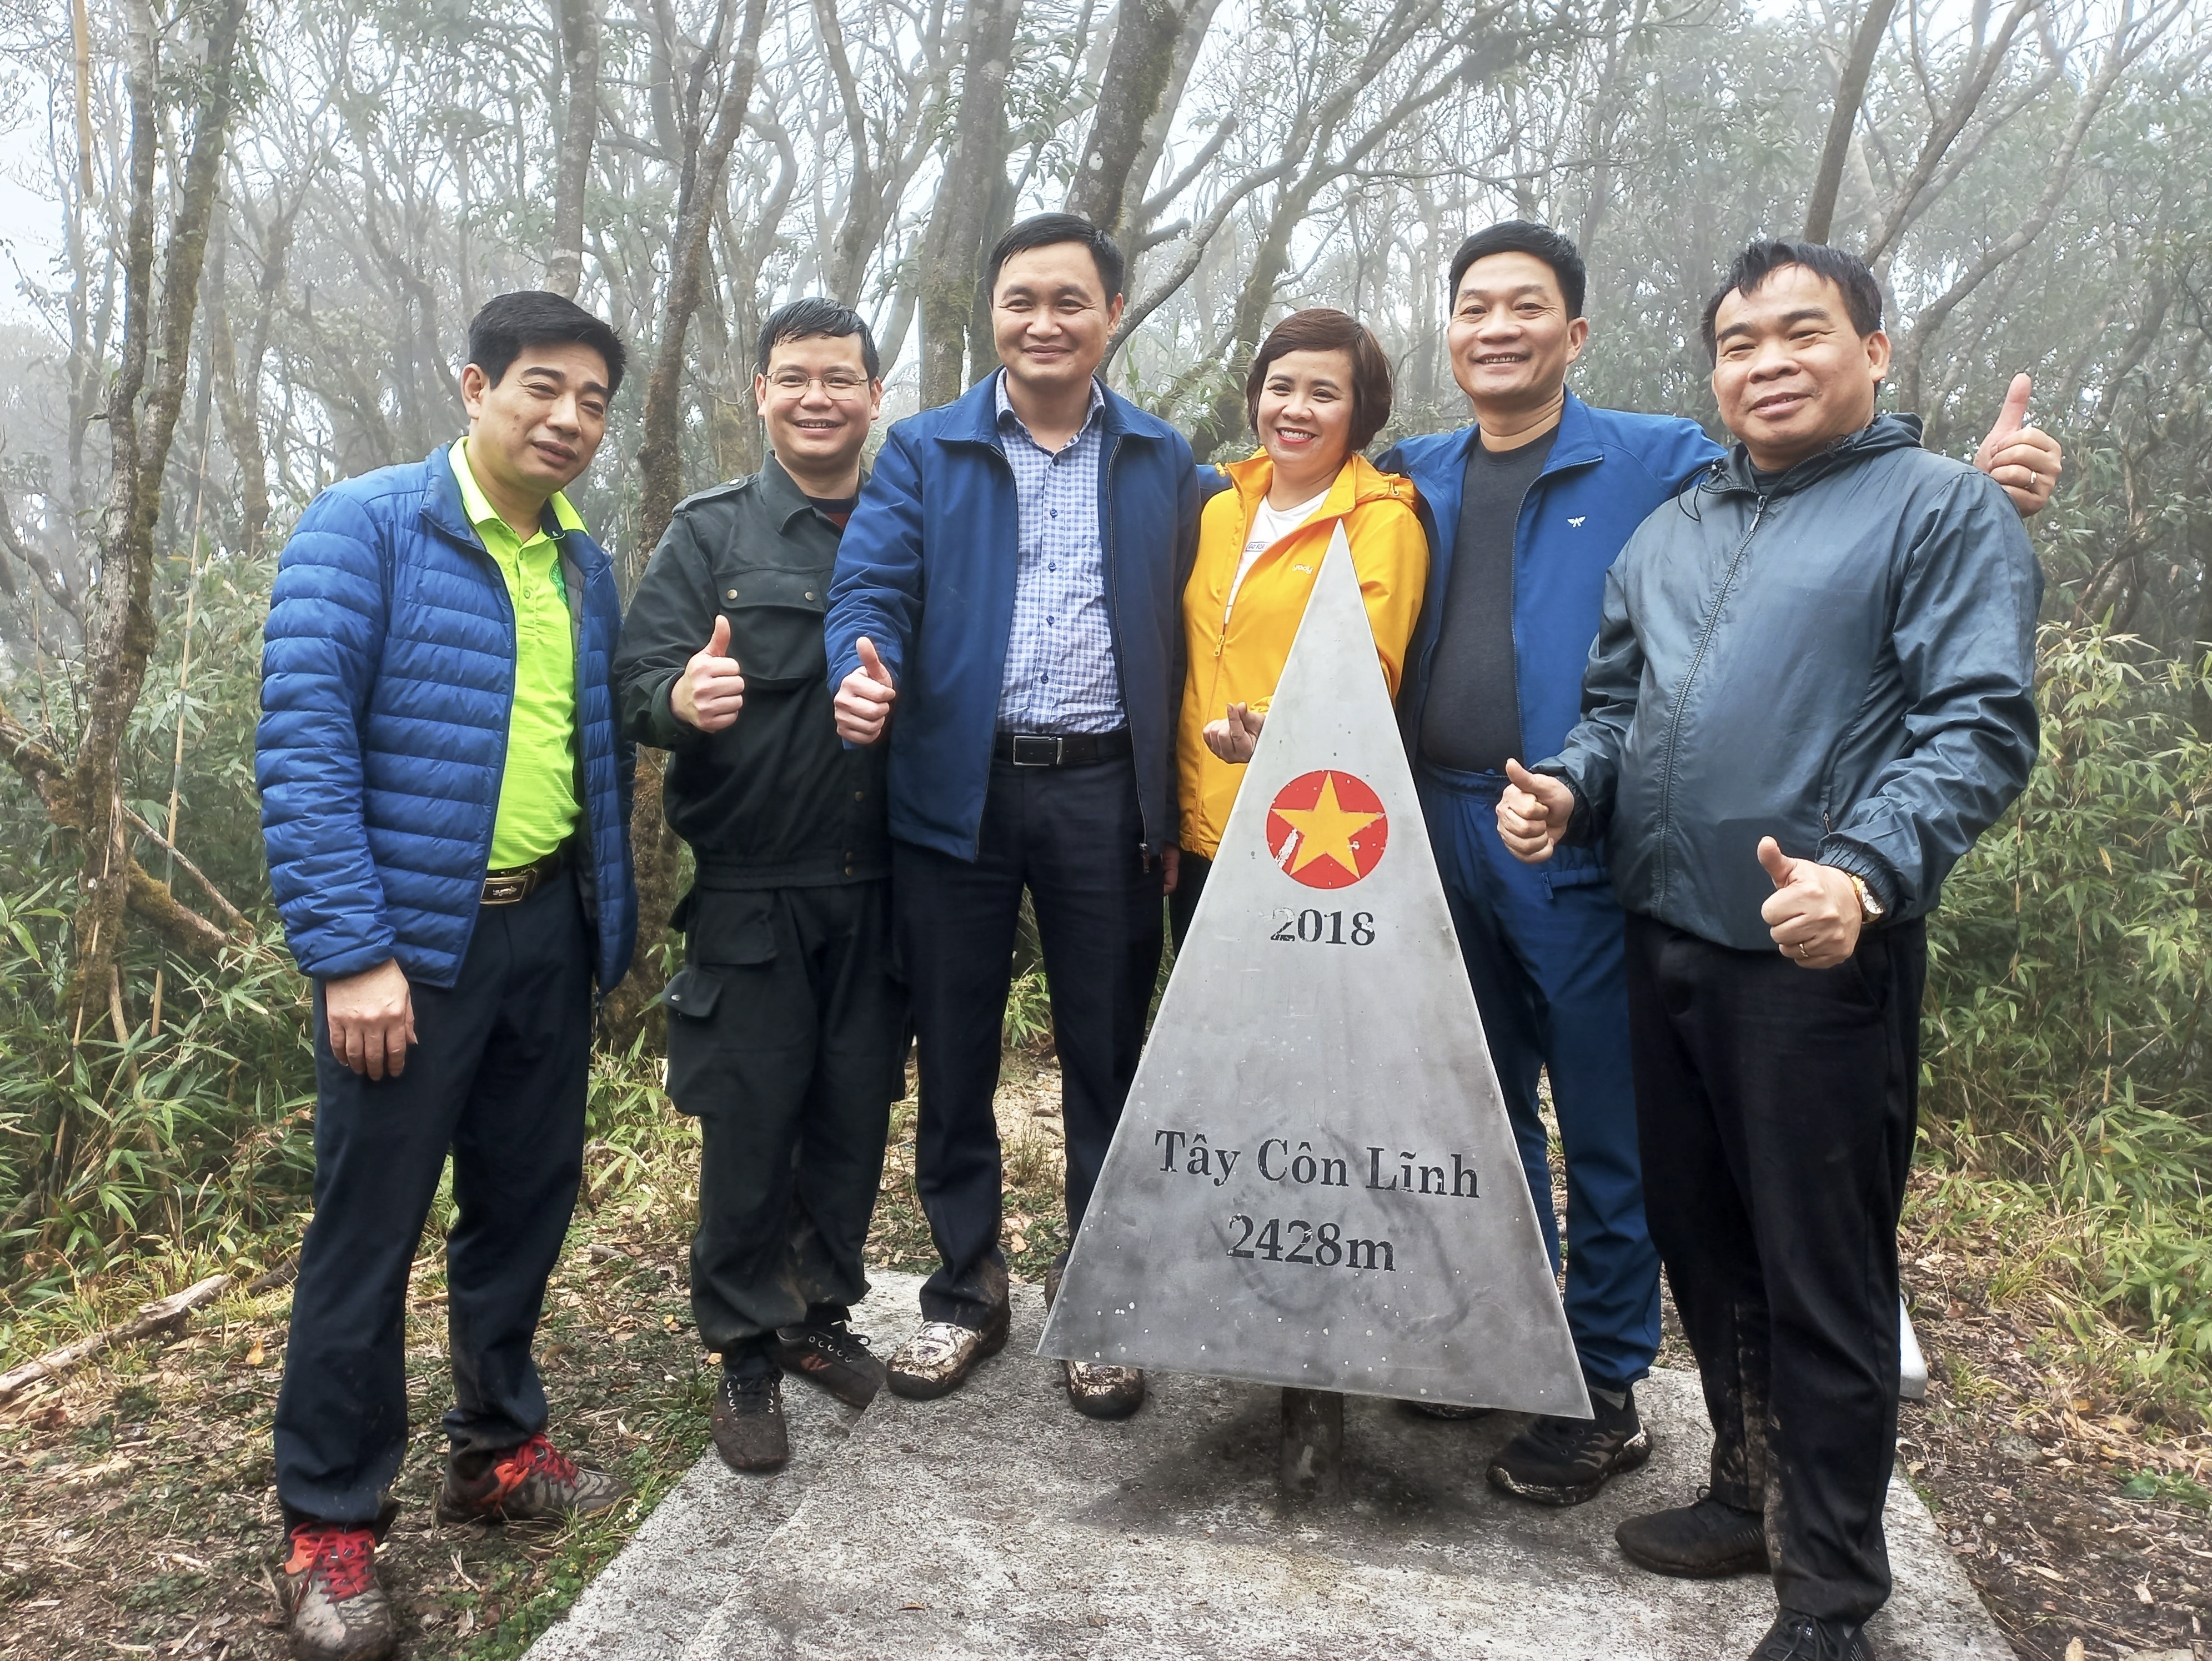 Lãnh đạo huyện Vị Xuyên khảo sát Tour du lịch khám phá đỉnh Tây Côn Lĩnh.